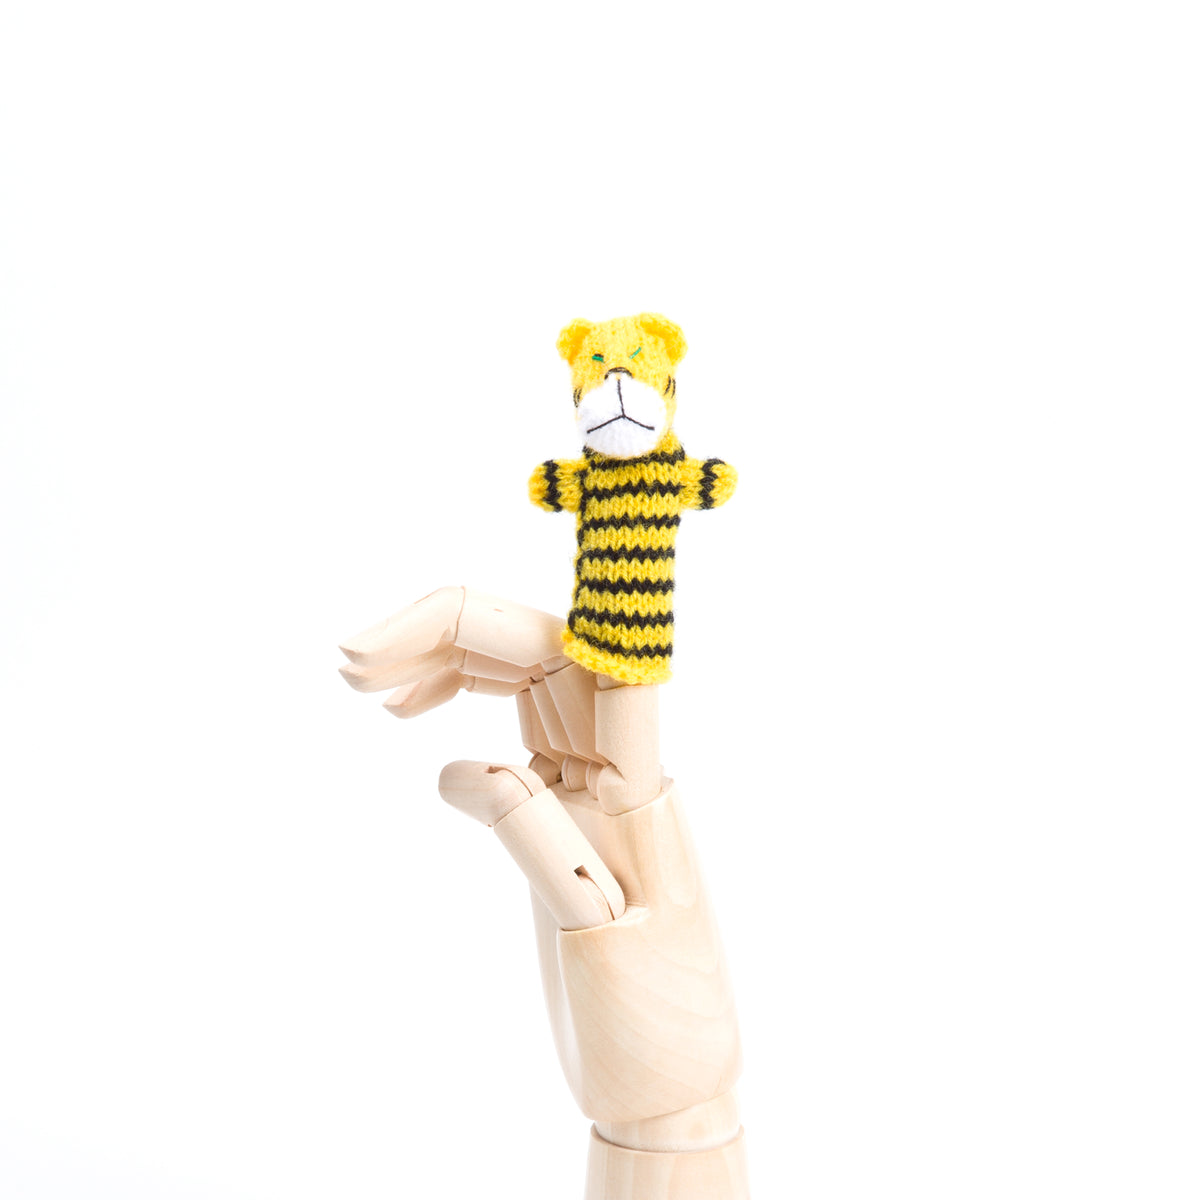 Tiger Finger Puppet